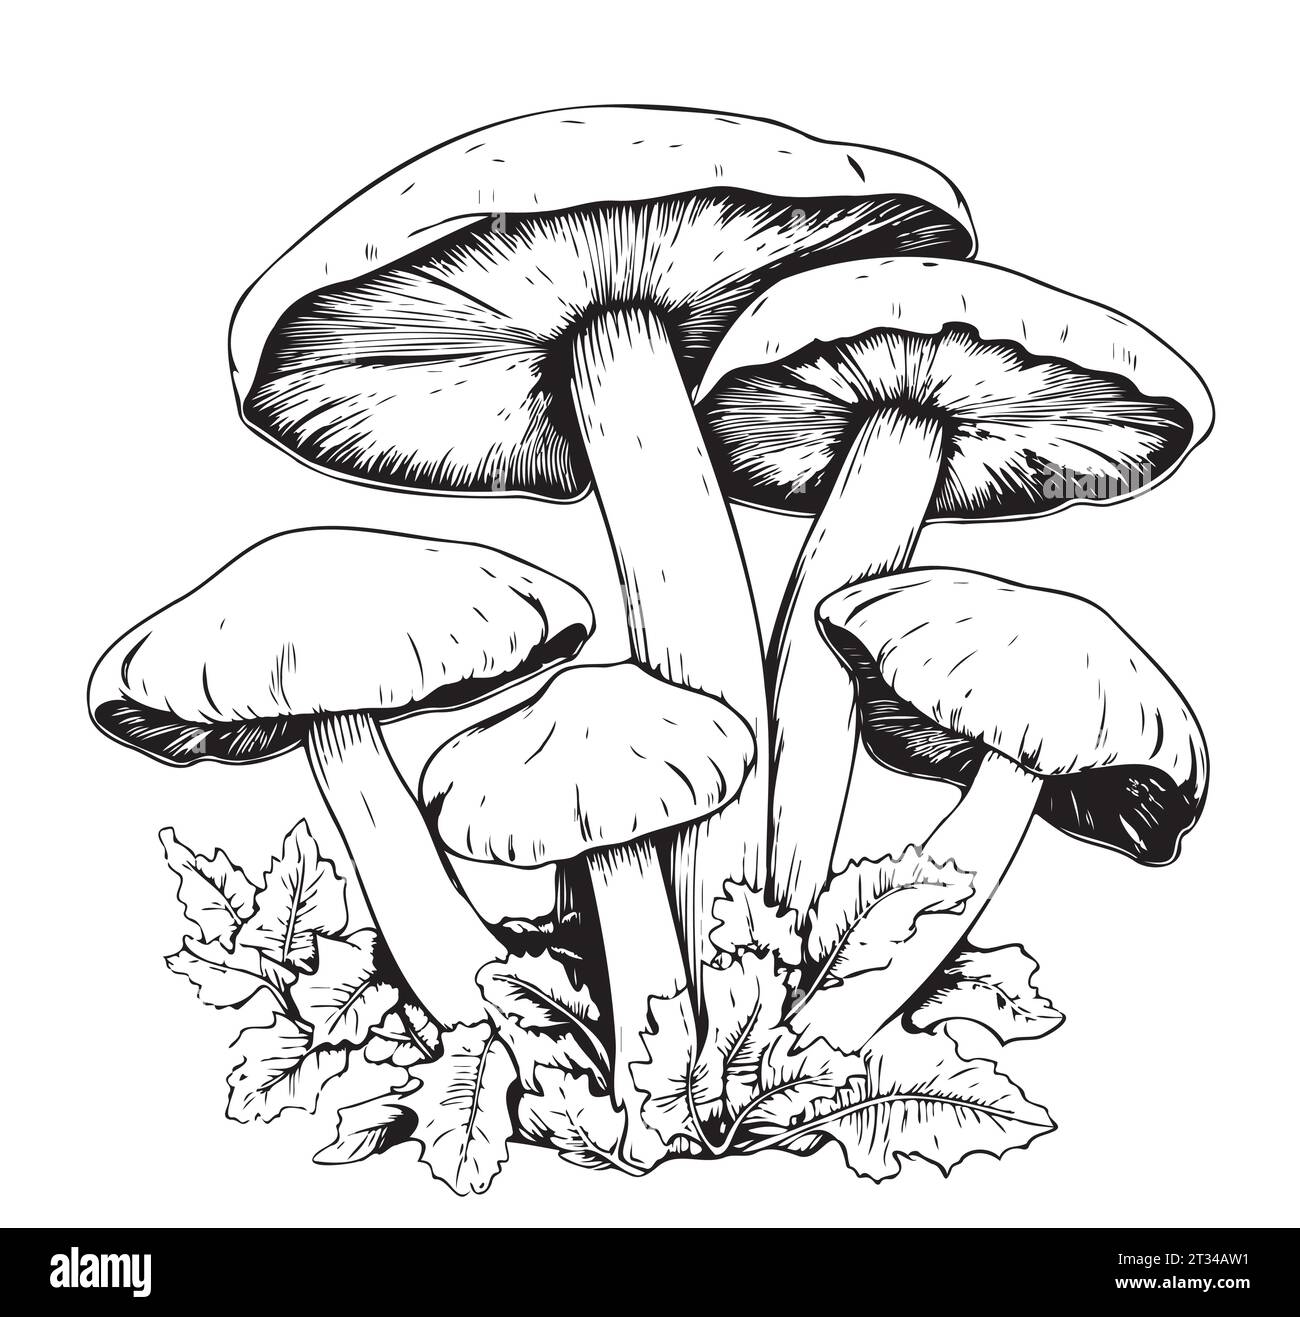 Giftige Pilze Vektor-Illustration von Hand gezeichnet, Familie der ungenießbaren Pilze gefährliche Pilze, Krötenhocker, Fliegenpilz, weiße Krötenhocker, Familie der Pilze Stock Vektor